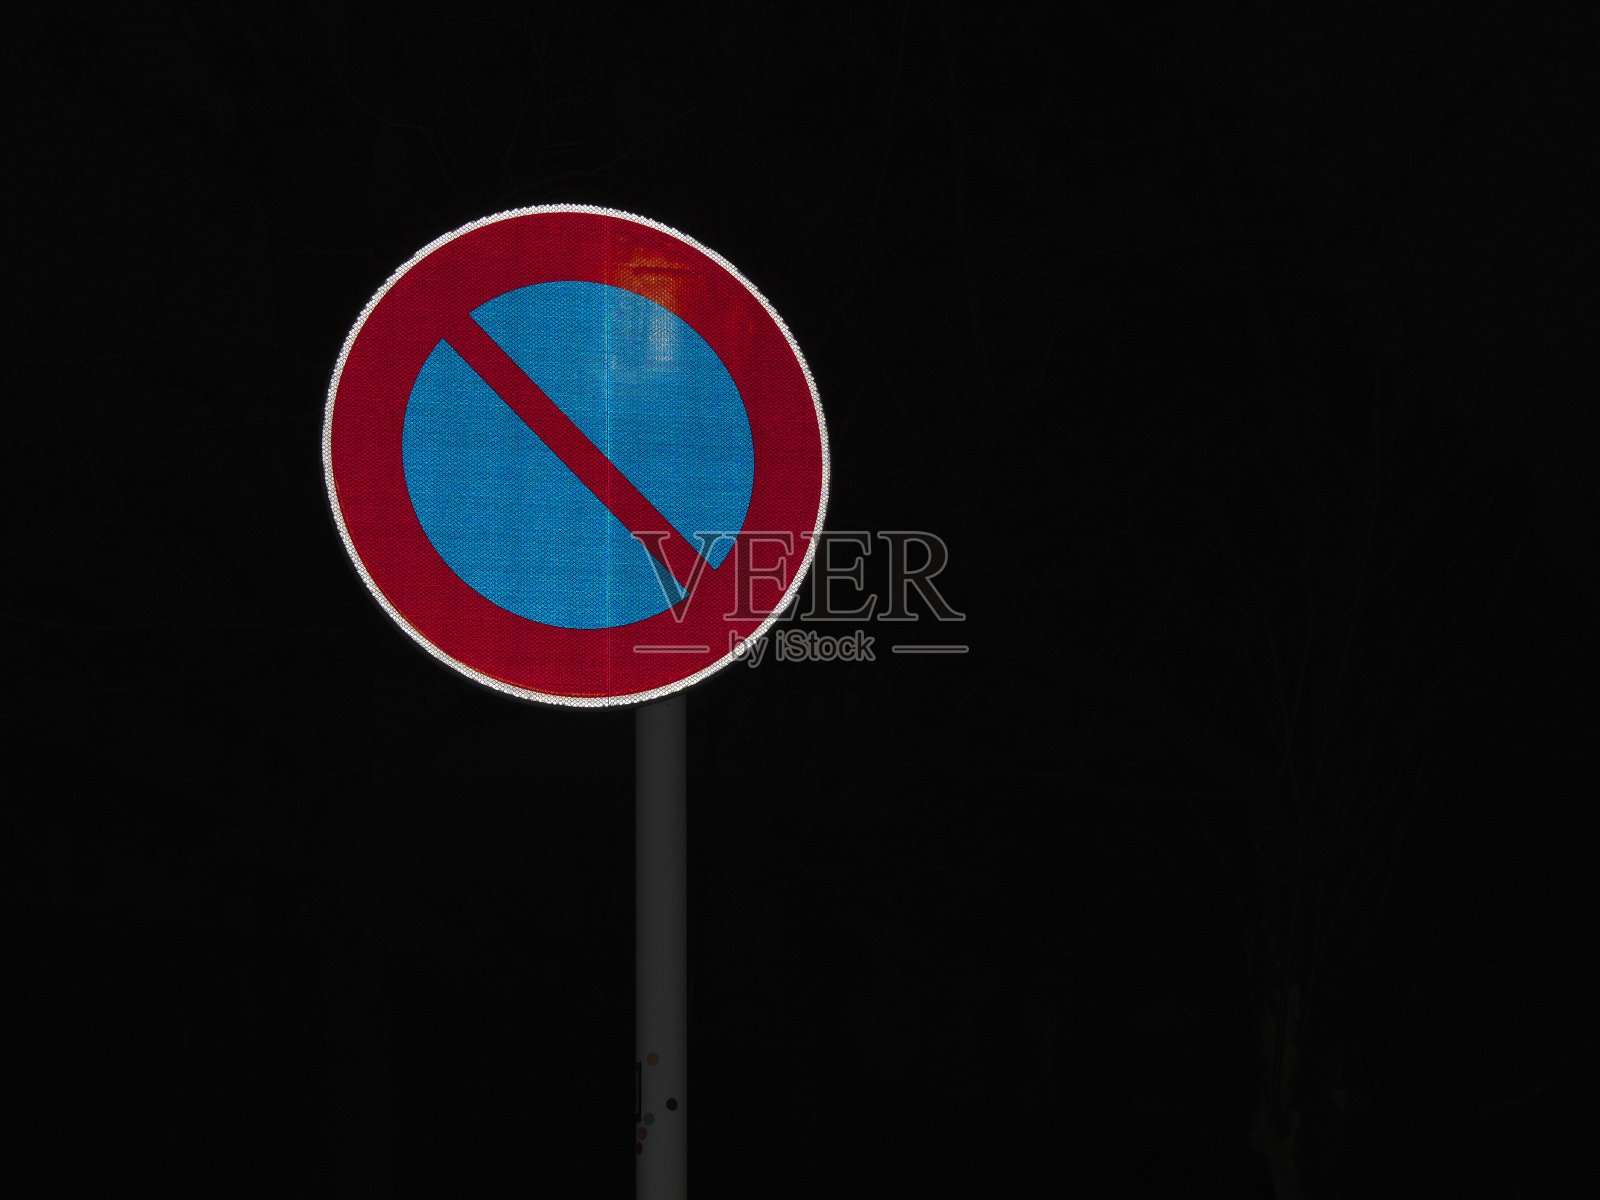 日本夜间禁止停车的标志照片摄影图片